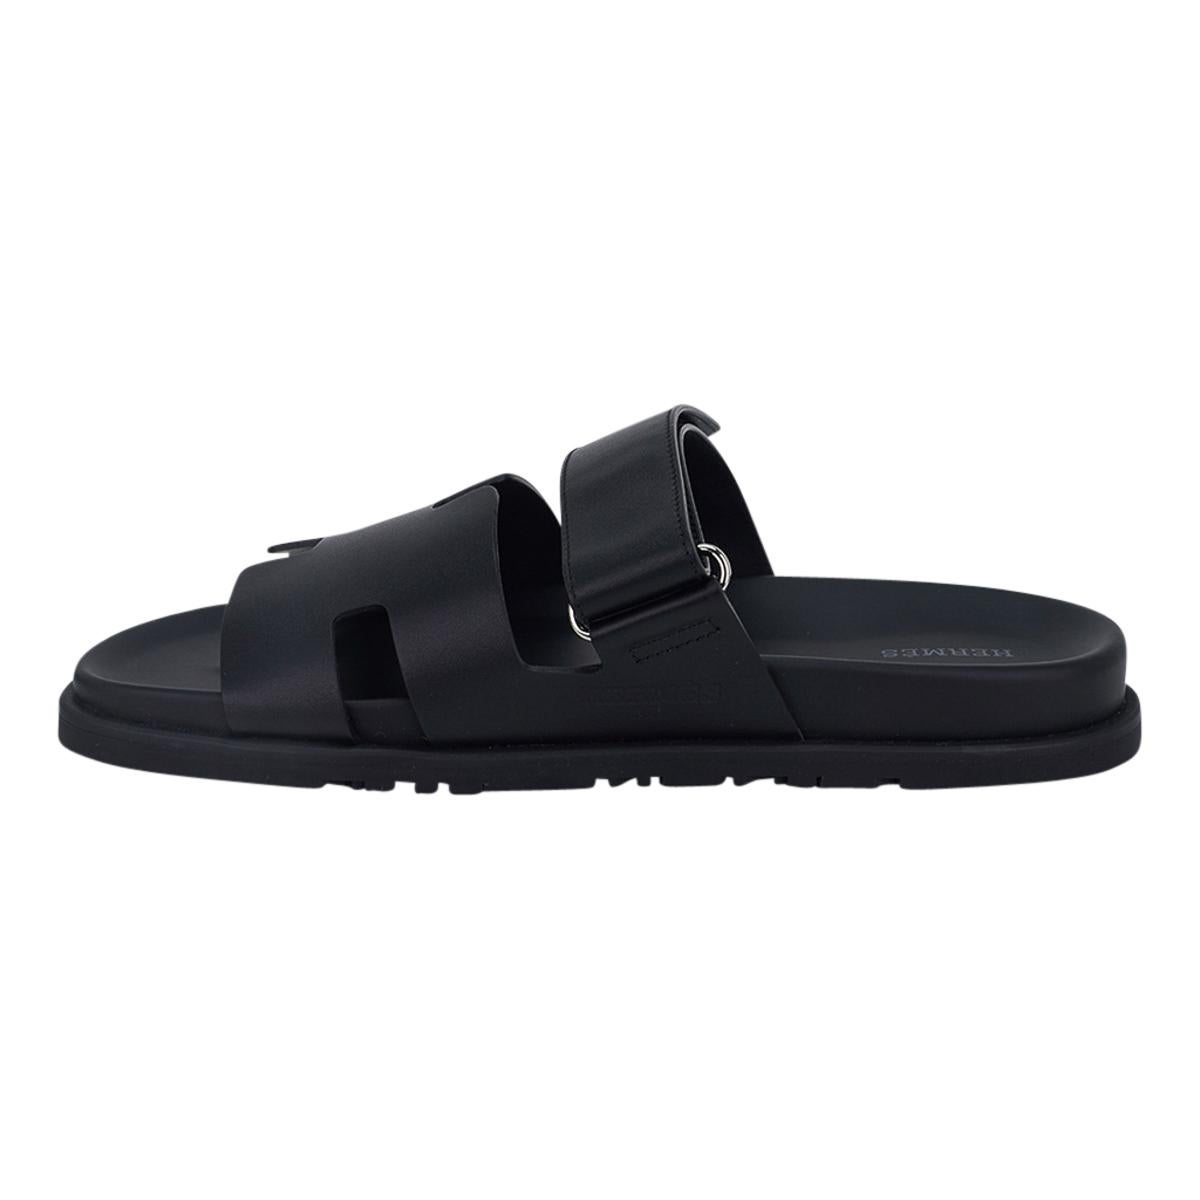 Hermes Men's Chypre Black Calfskin Leather Sandal 44 / 11 For Sale 1